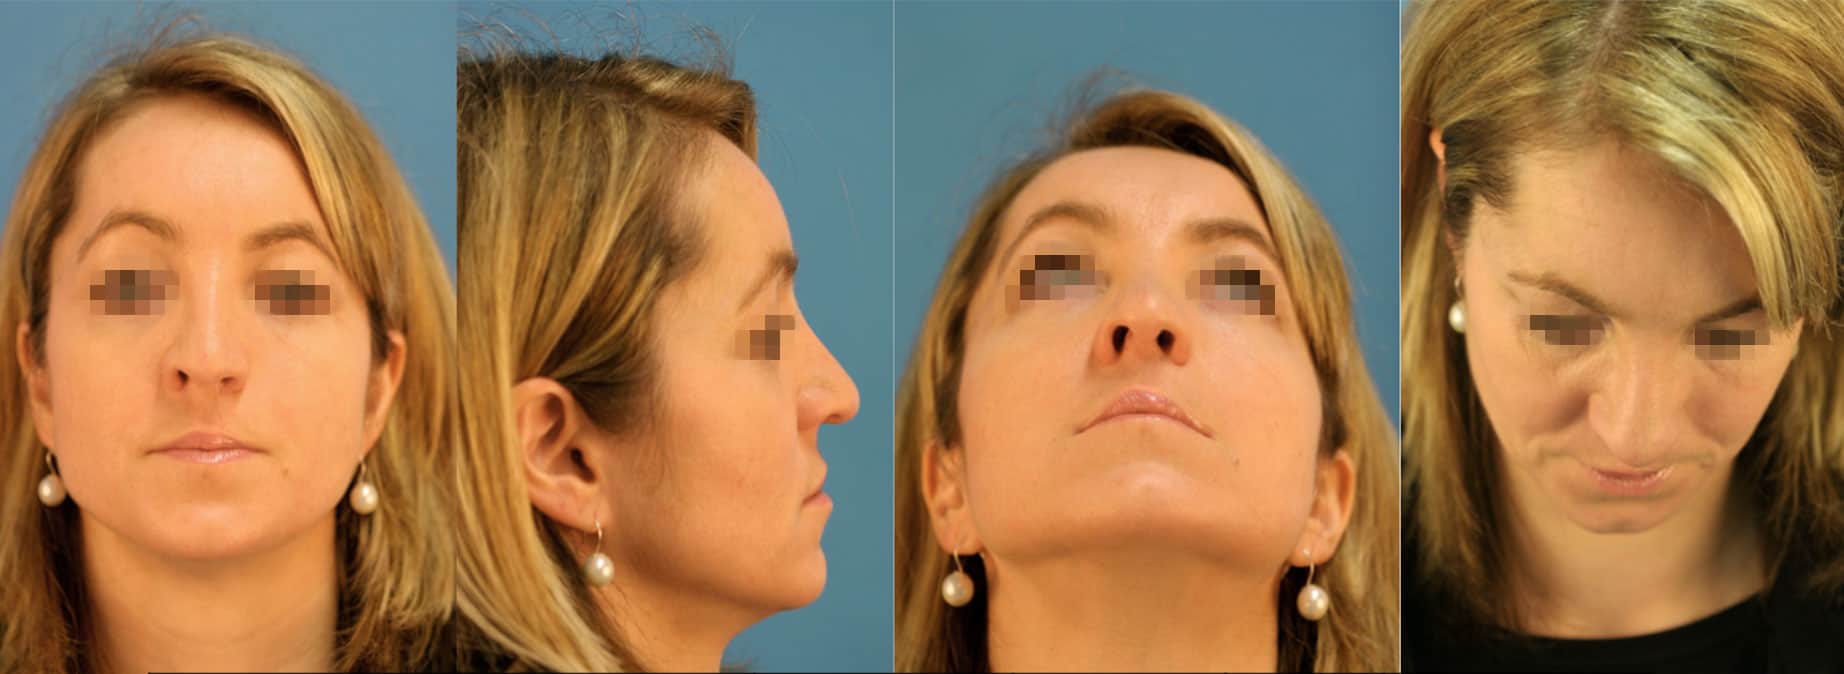 Rhinoplastik, Ästhetische Nasenkorrekturen, Spaltnasenkorrekturen